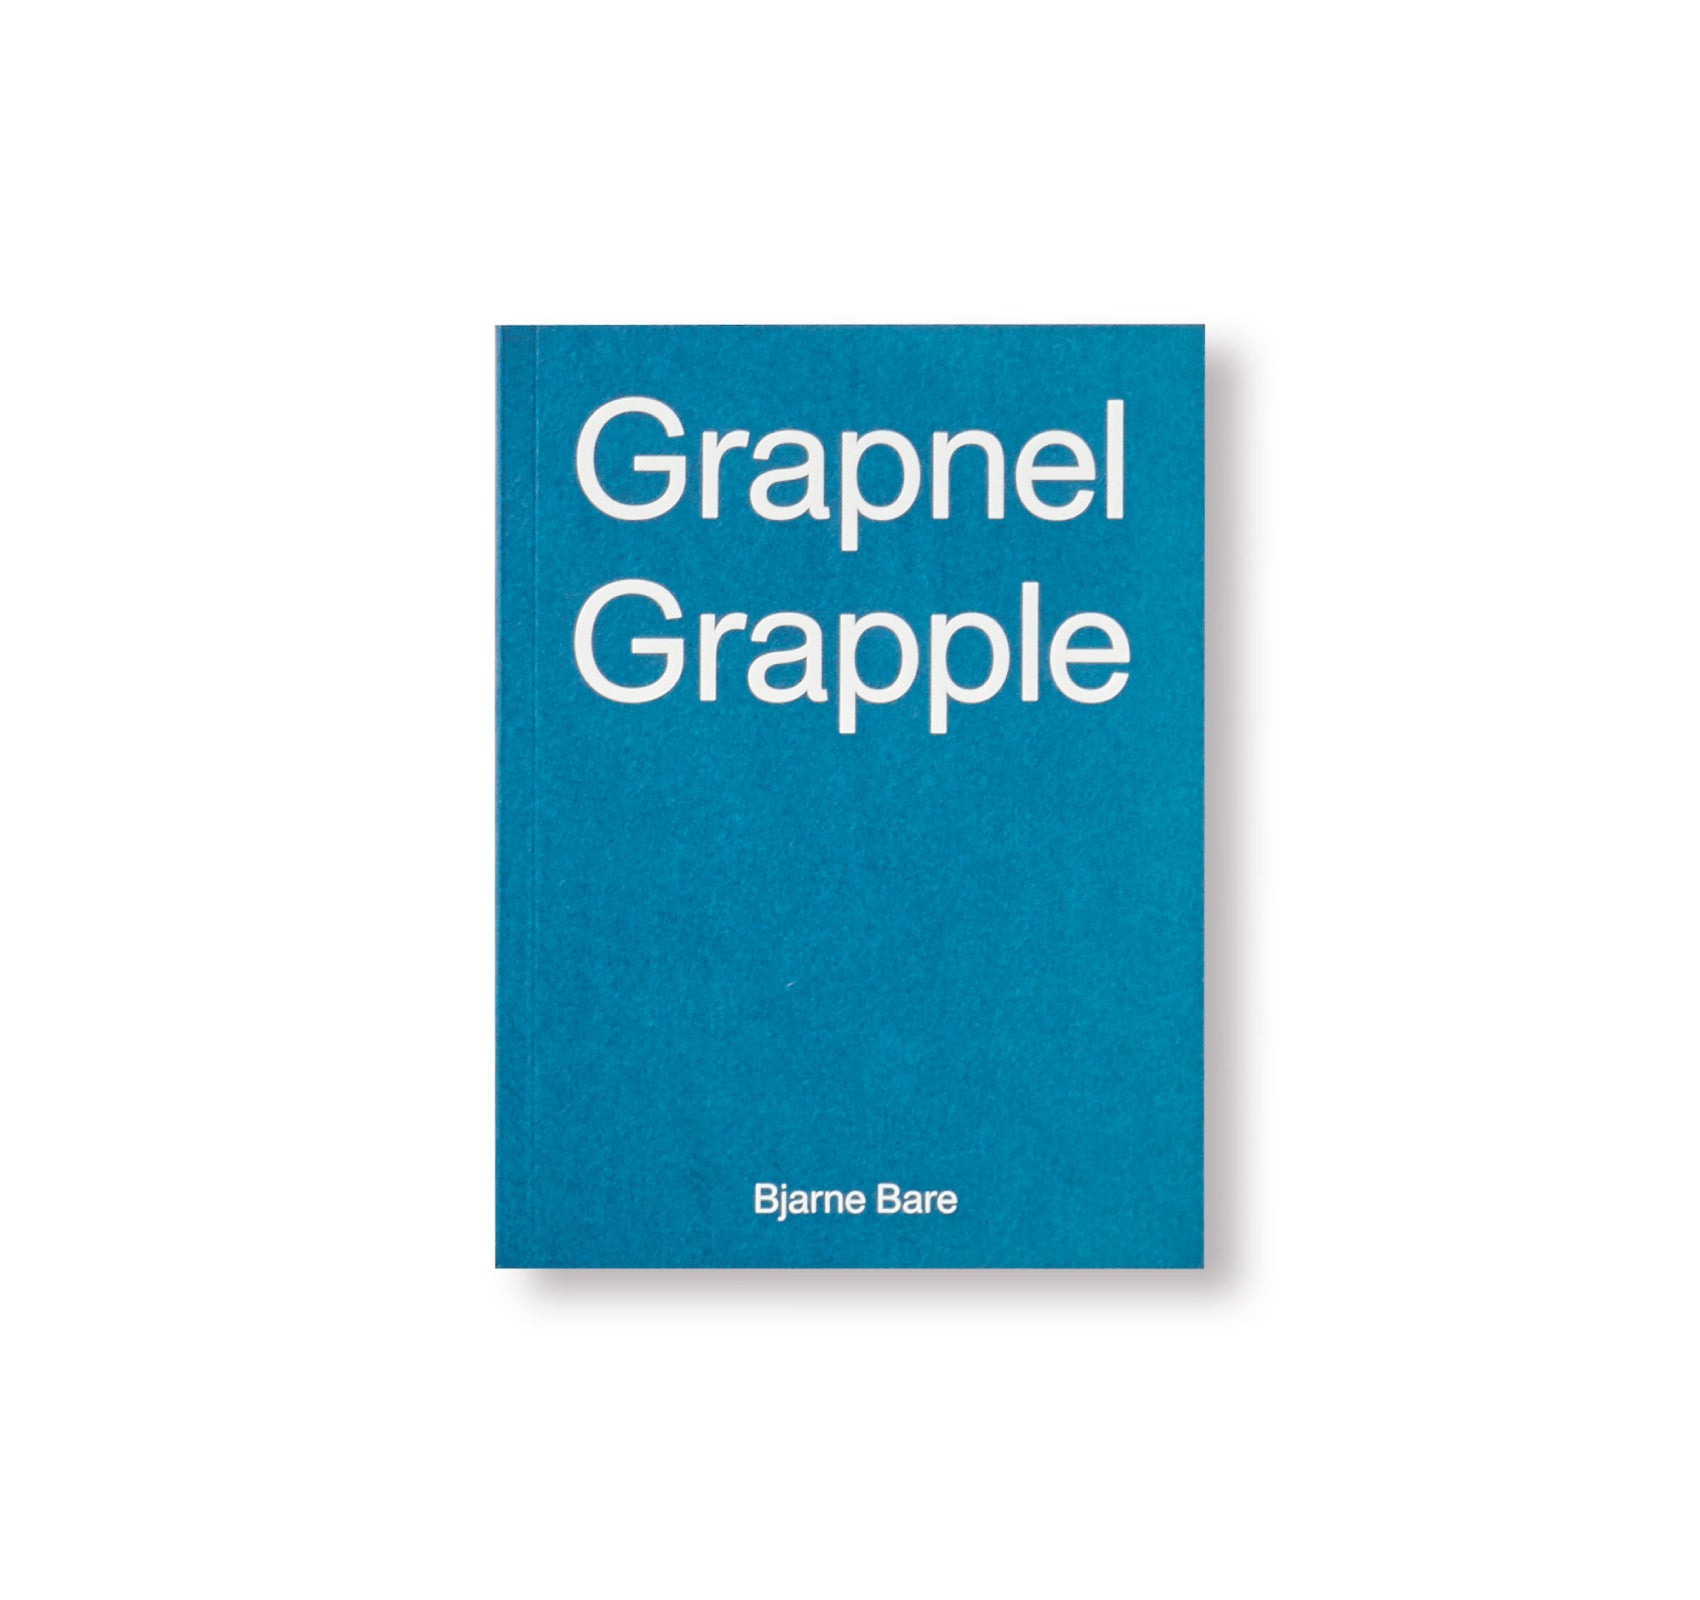 GRAPNEL GRAPPLE by Bjarne Bare